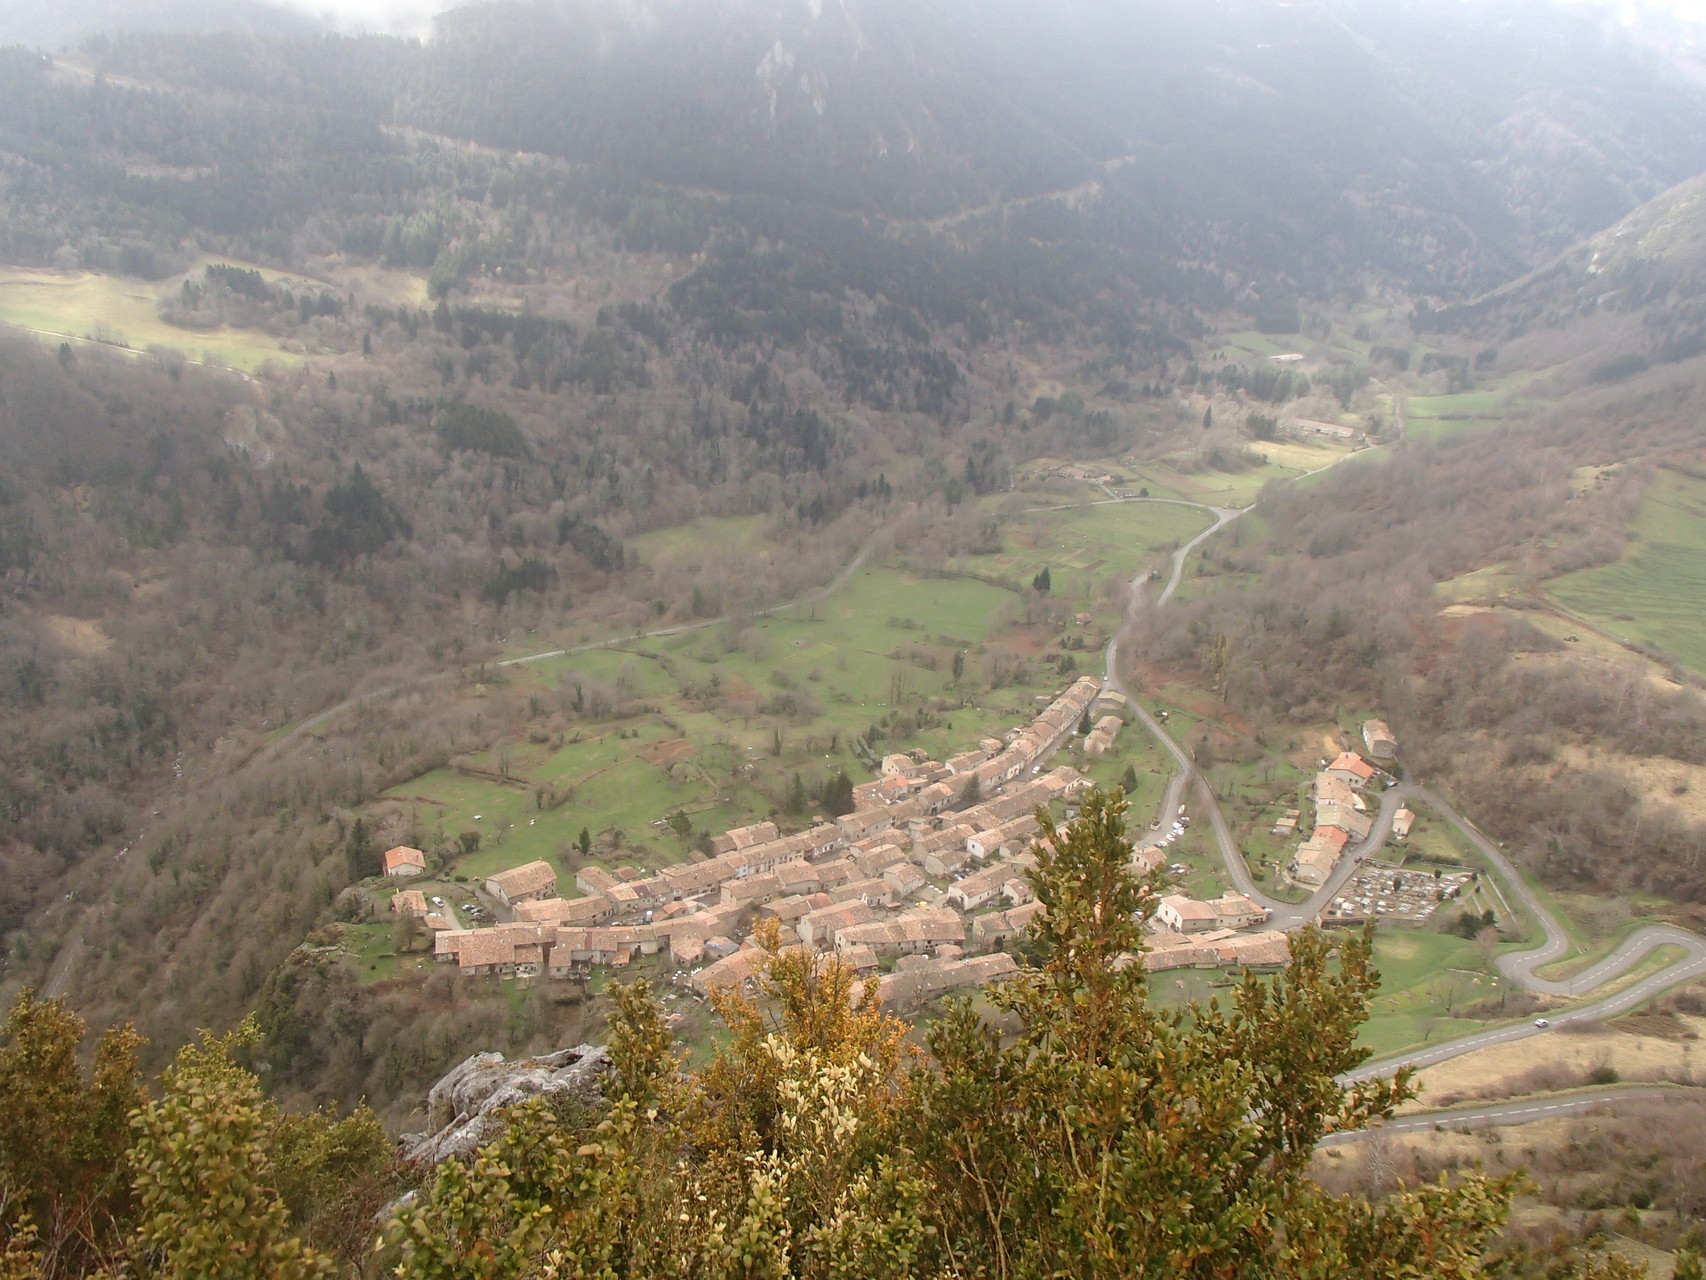 Blick auf das anliegende Dorf am Fuße des Berges